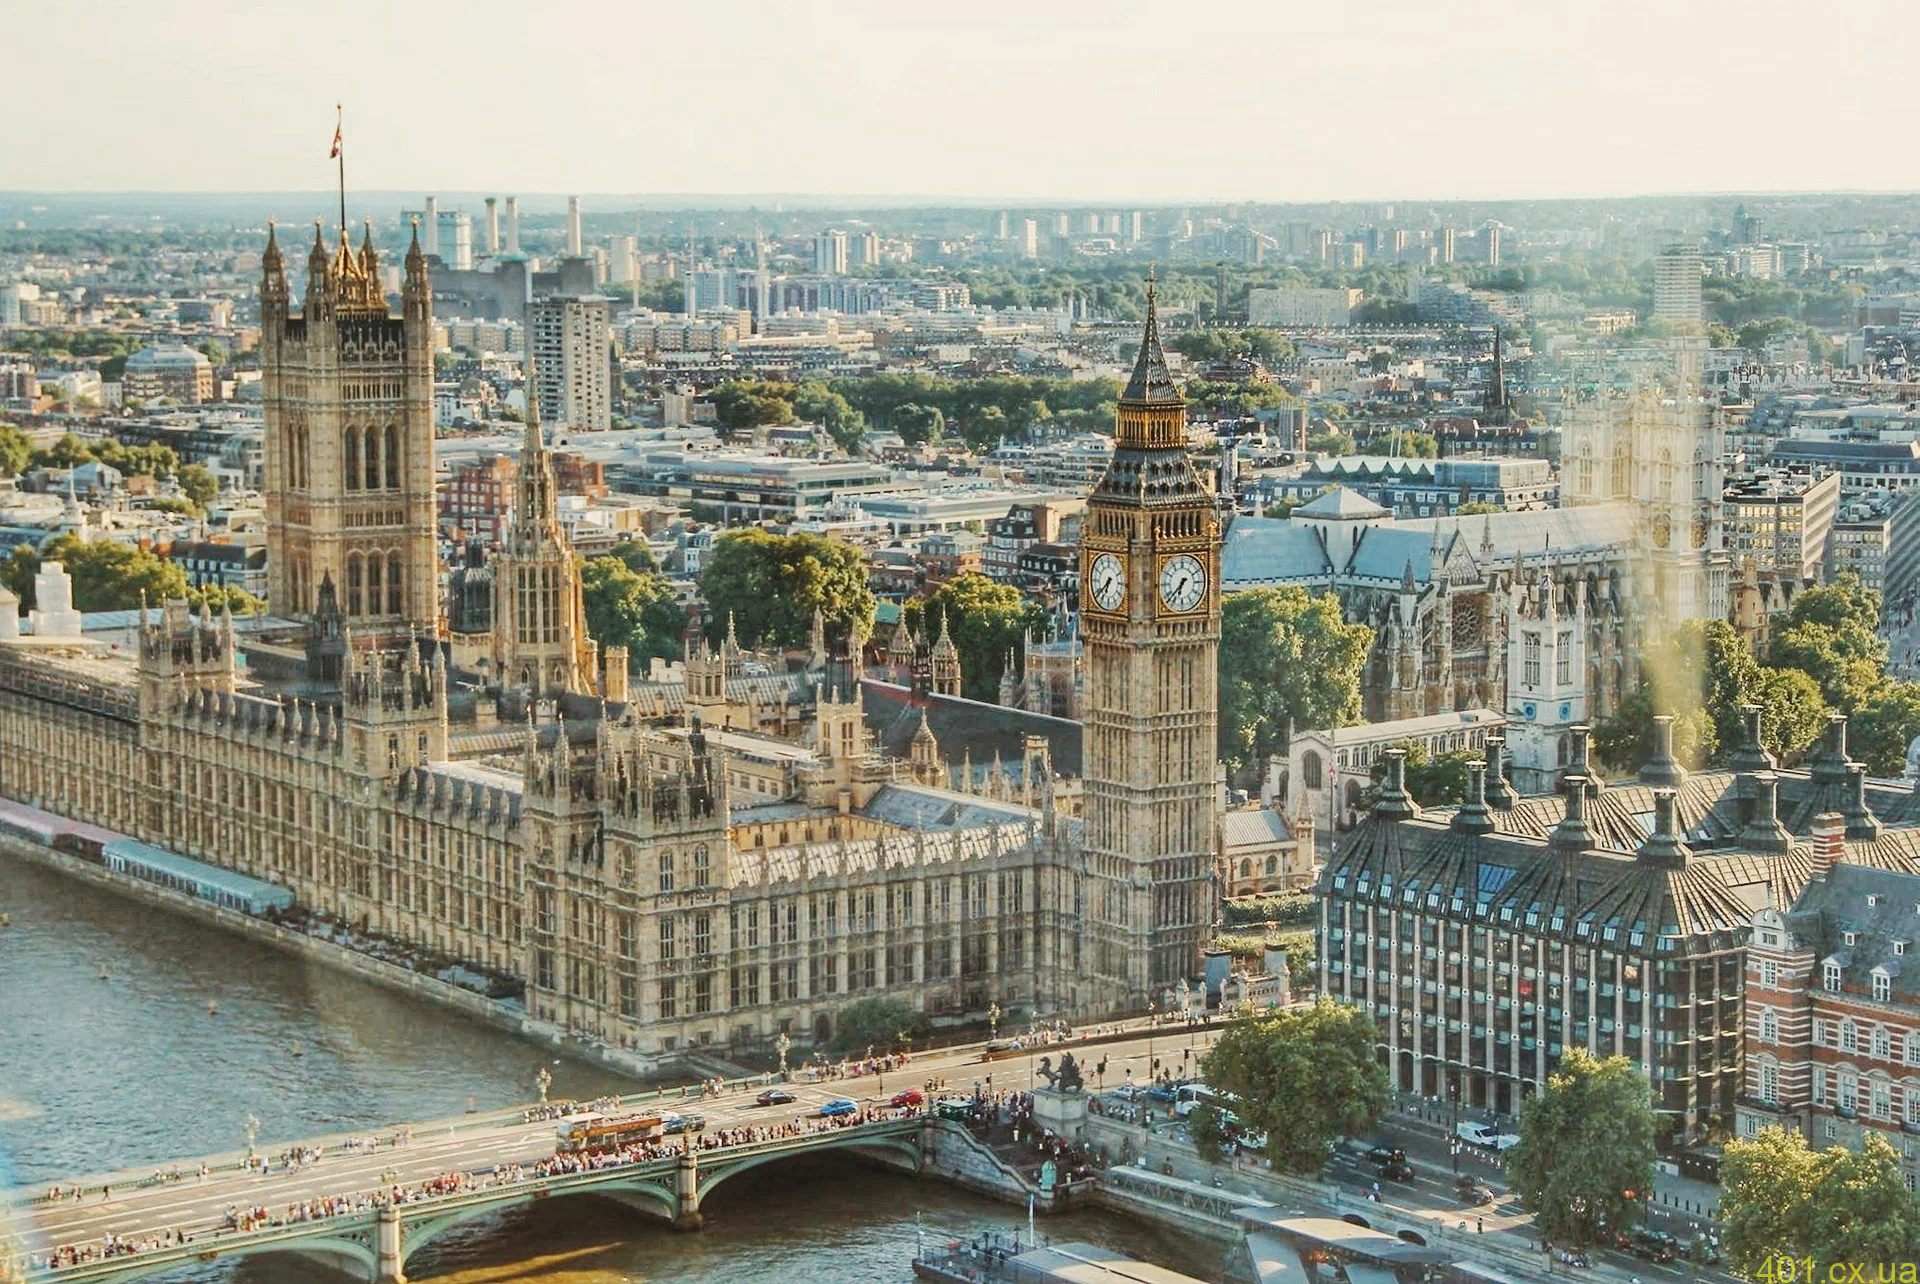 4 рекомендации: как выгодно и безопасно снять жилье в Лондоне